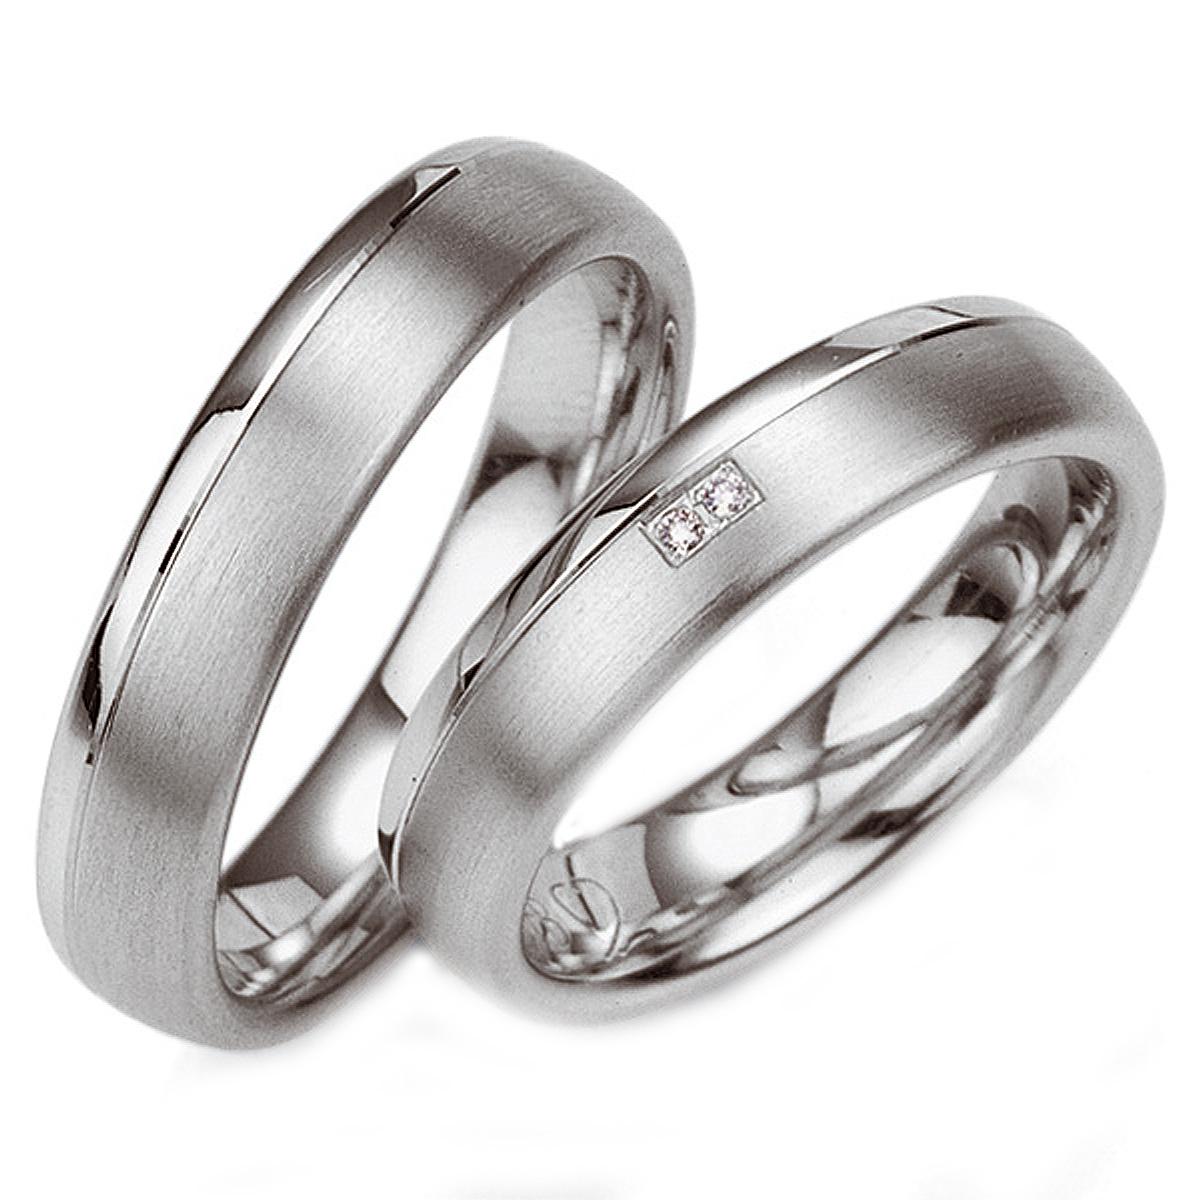 Купить обручальные серебряные кольца в Воронеже недорого на свадьбу и помолвку